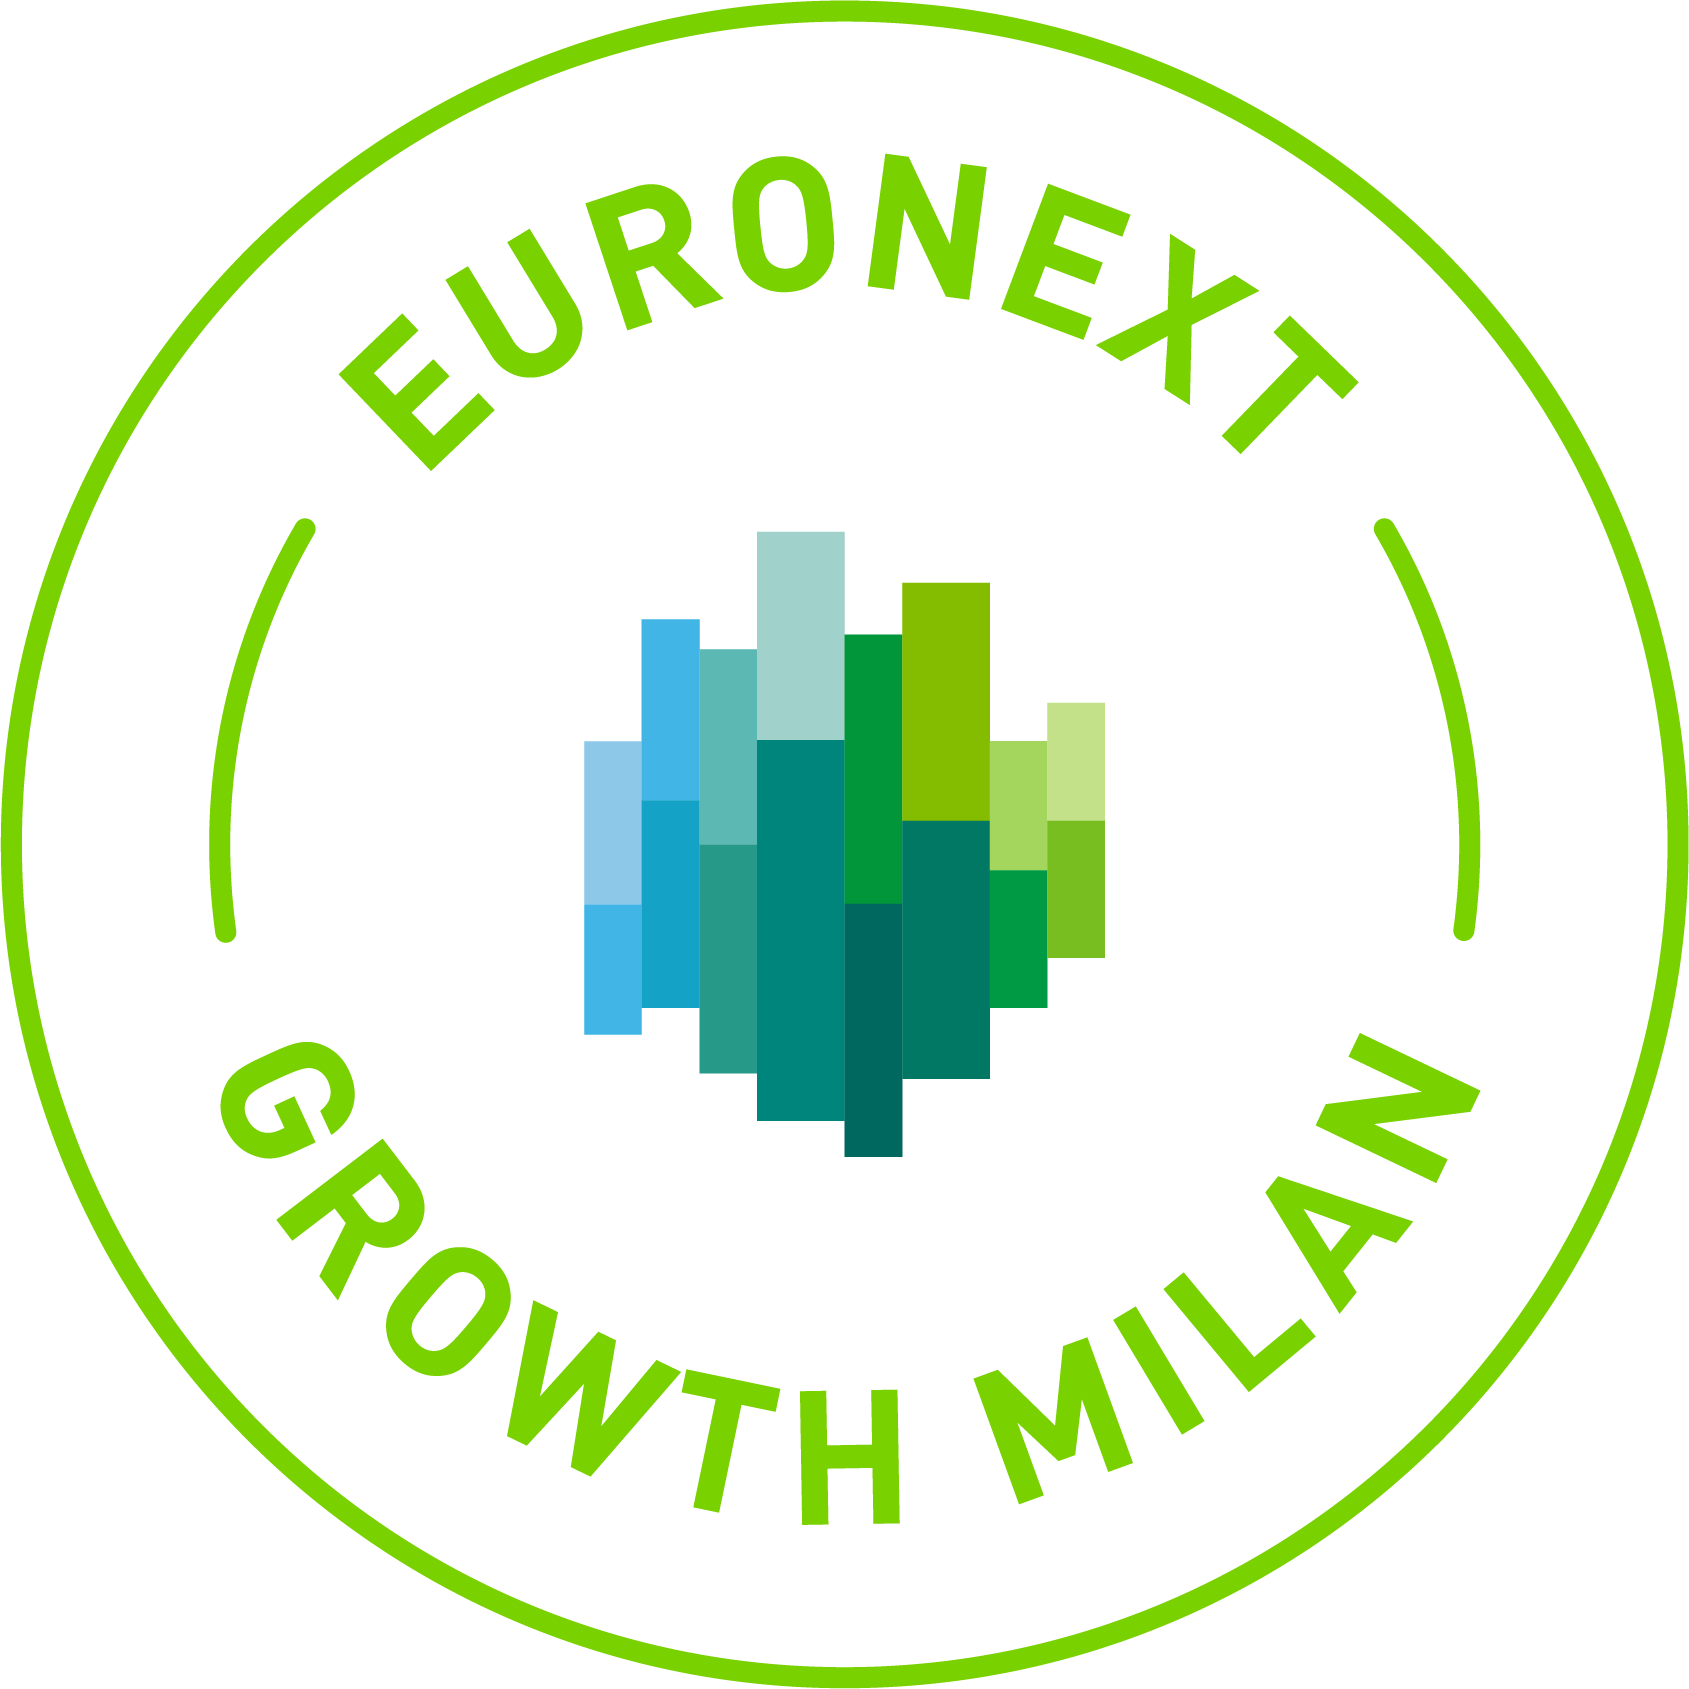 Euronext Growth Milan